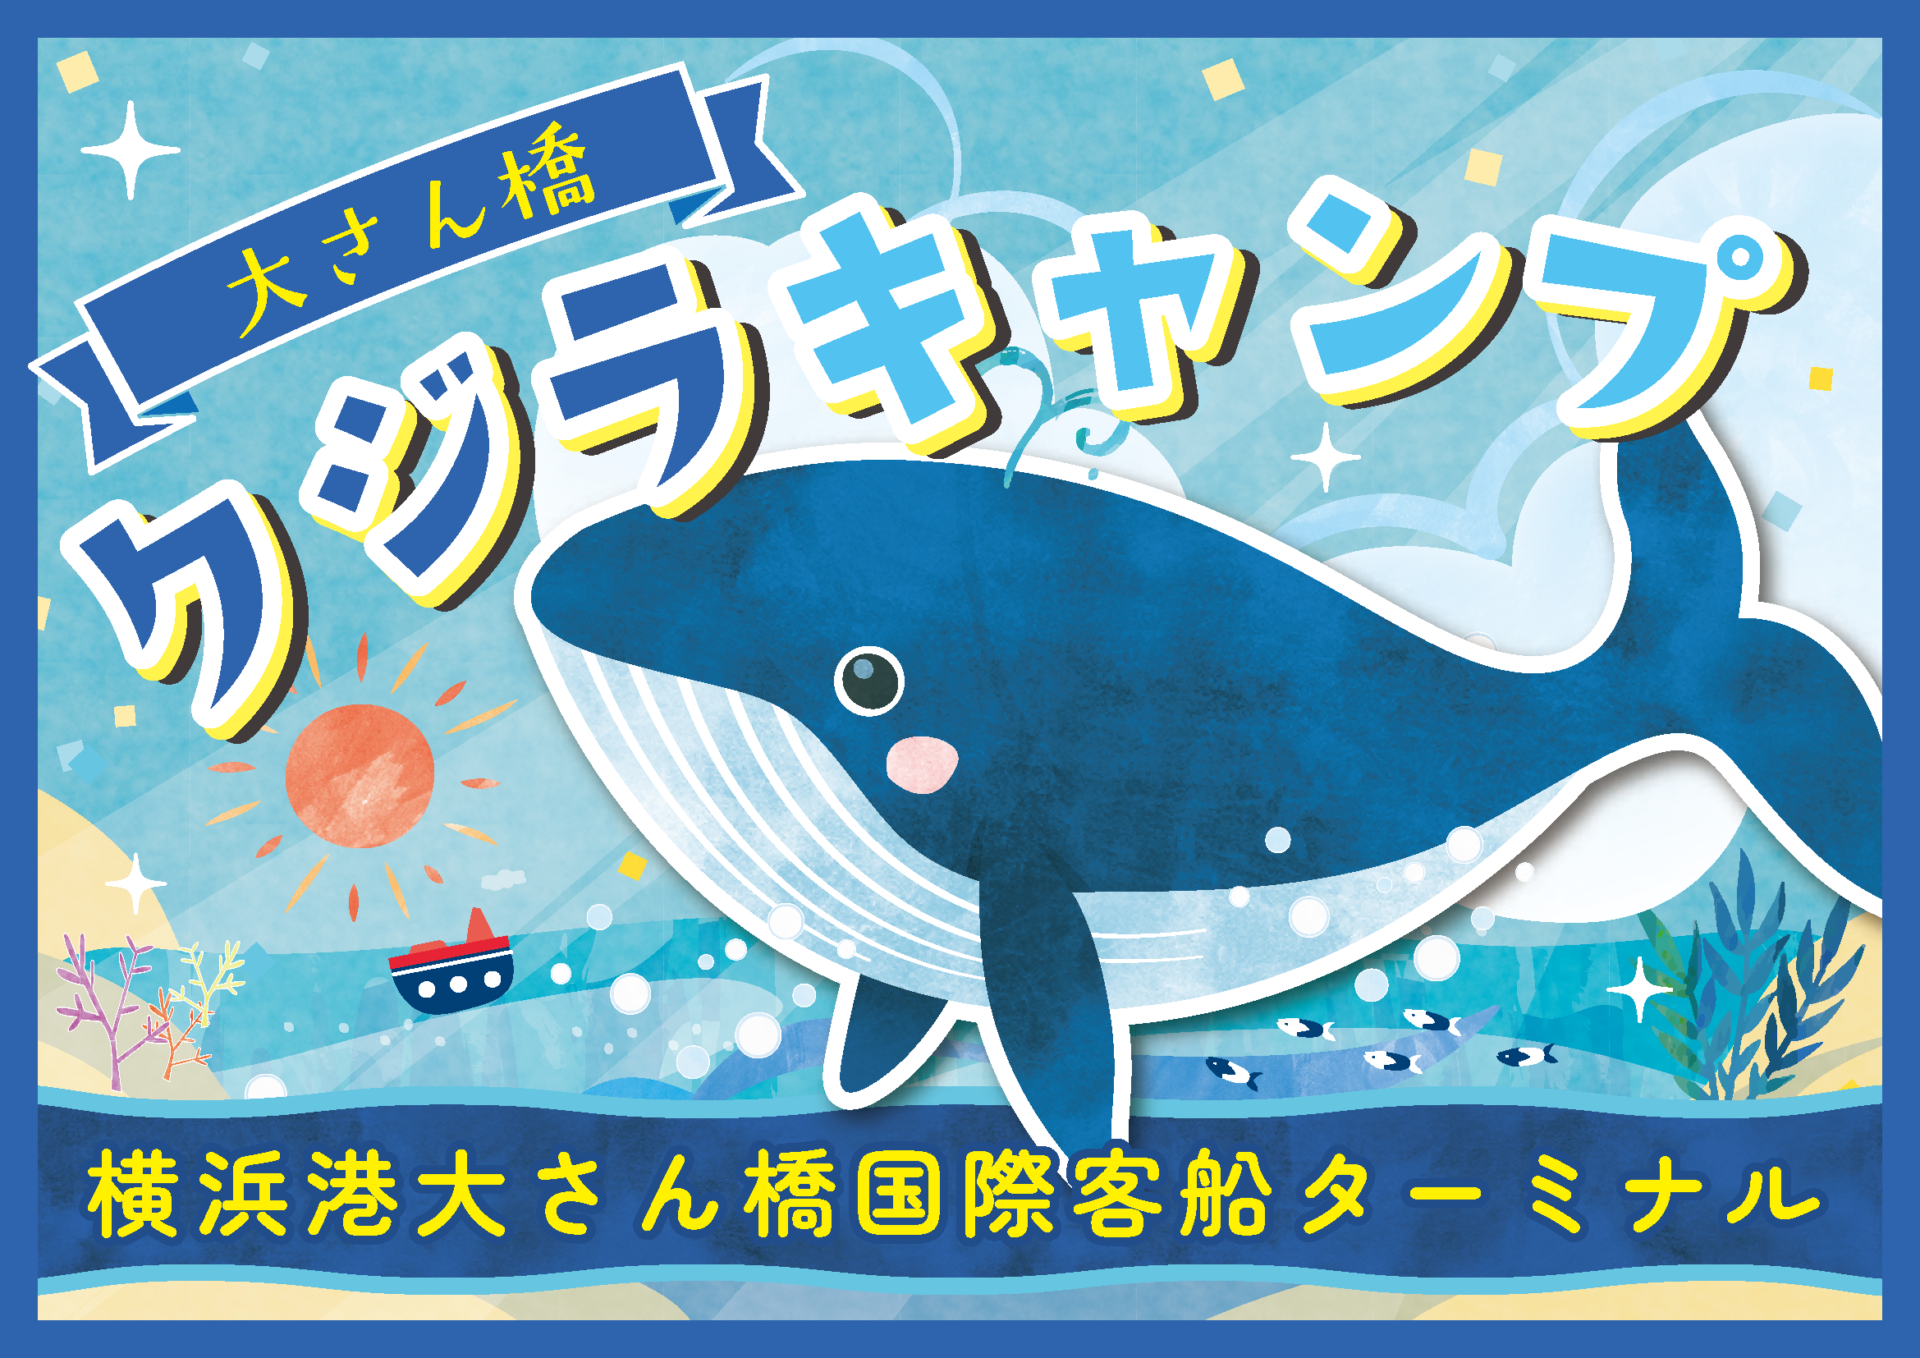 横浜港大さん橋国際旅客ターミナル「夏休み！第2回 大さん橋 クジラキャンプ」